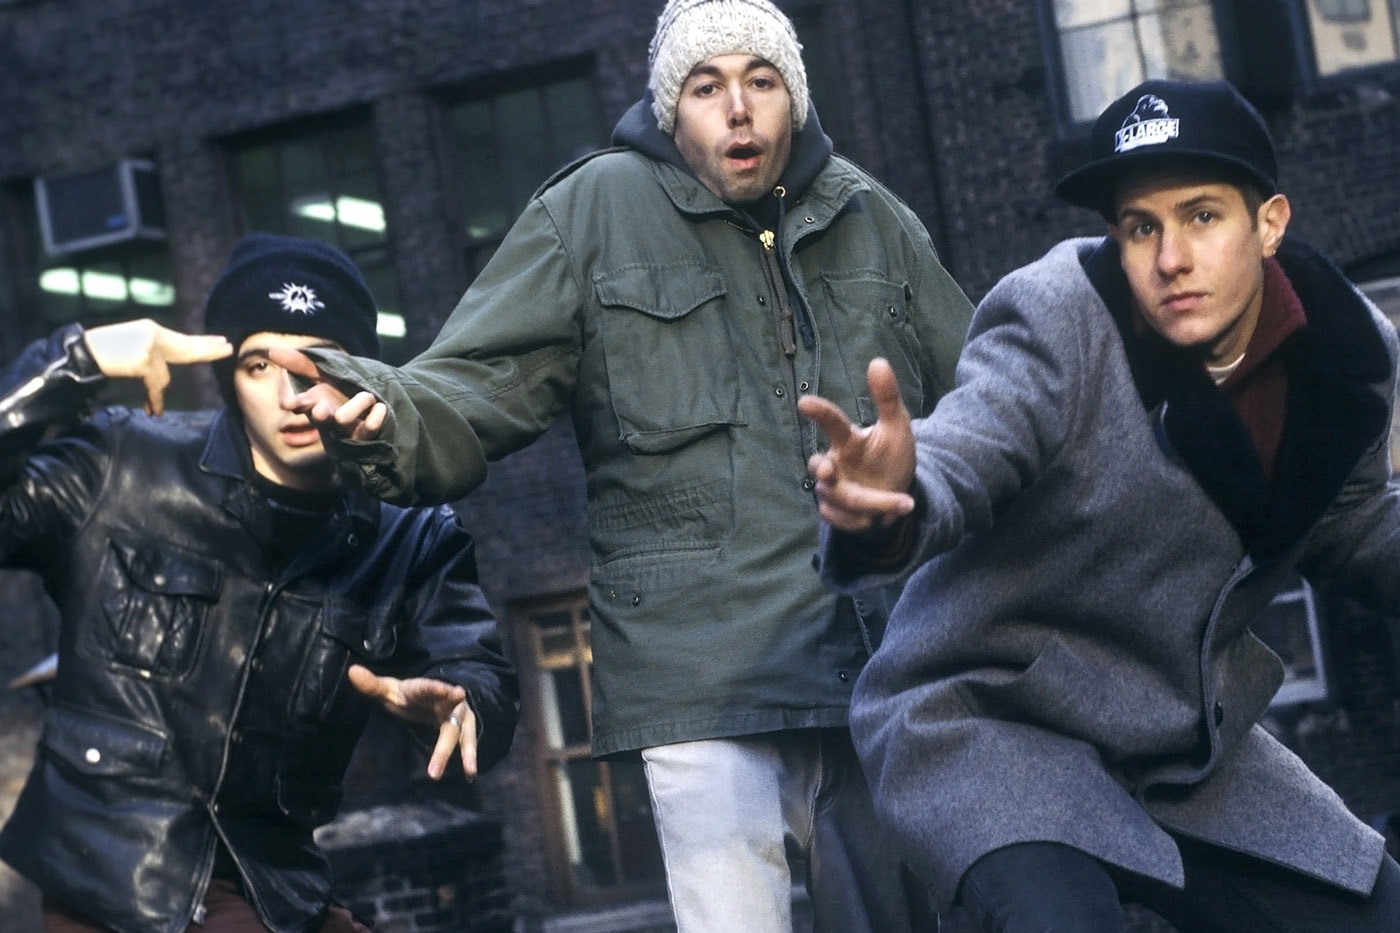 ビースティ・ボーイズのアルバムカバーで知られる交差点が“ビースティ・ボーイズ・スクエア”に改名 New York City Council Approves Ludlow Rivington Beastie Boys Square renaming